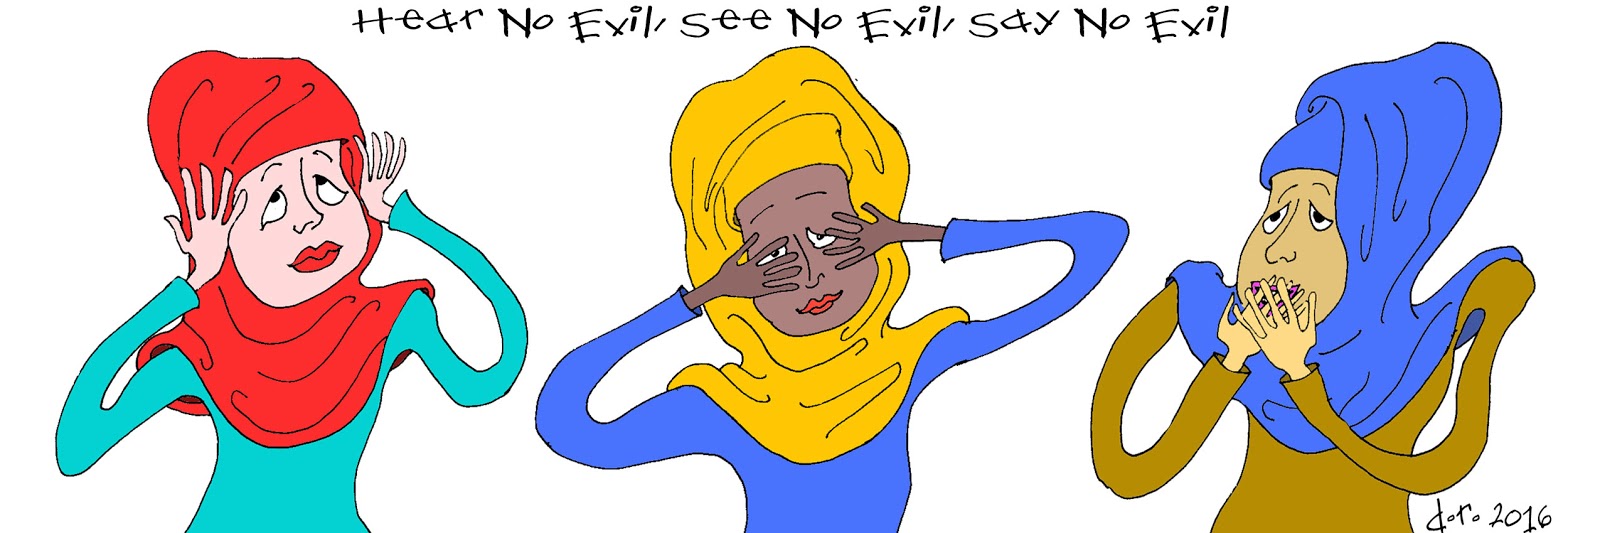 Dorrie's Comics and Cartoons: Hear No Evil, See No Evil, Say No Evil